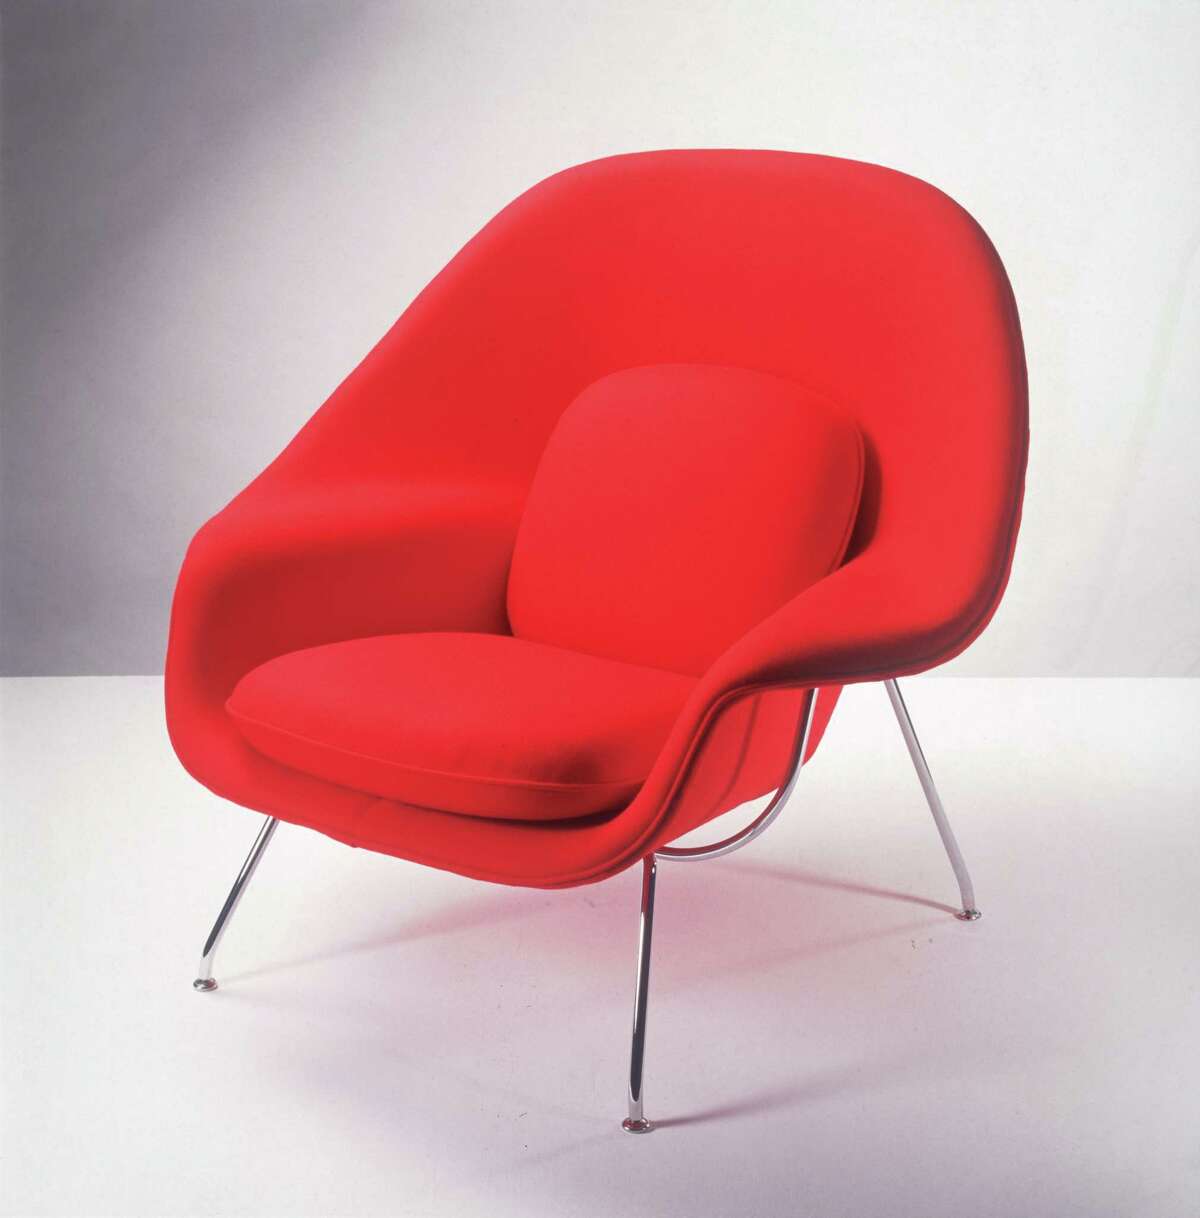 The Womb chair, designed by Eero Saarinen.